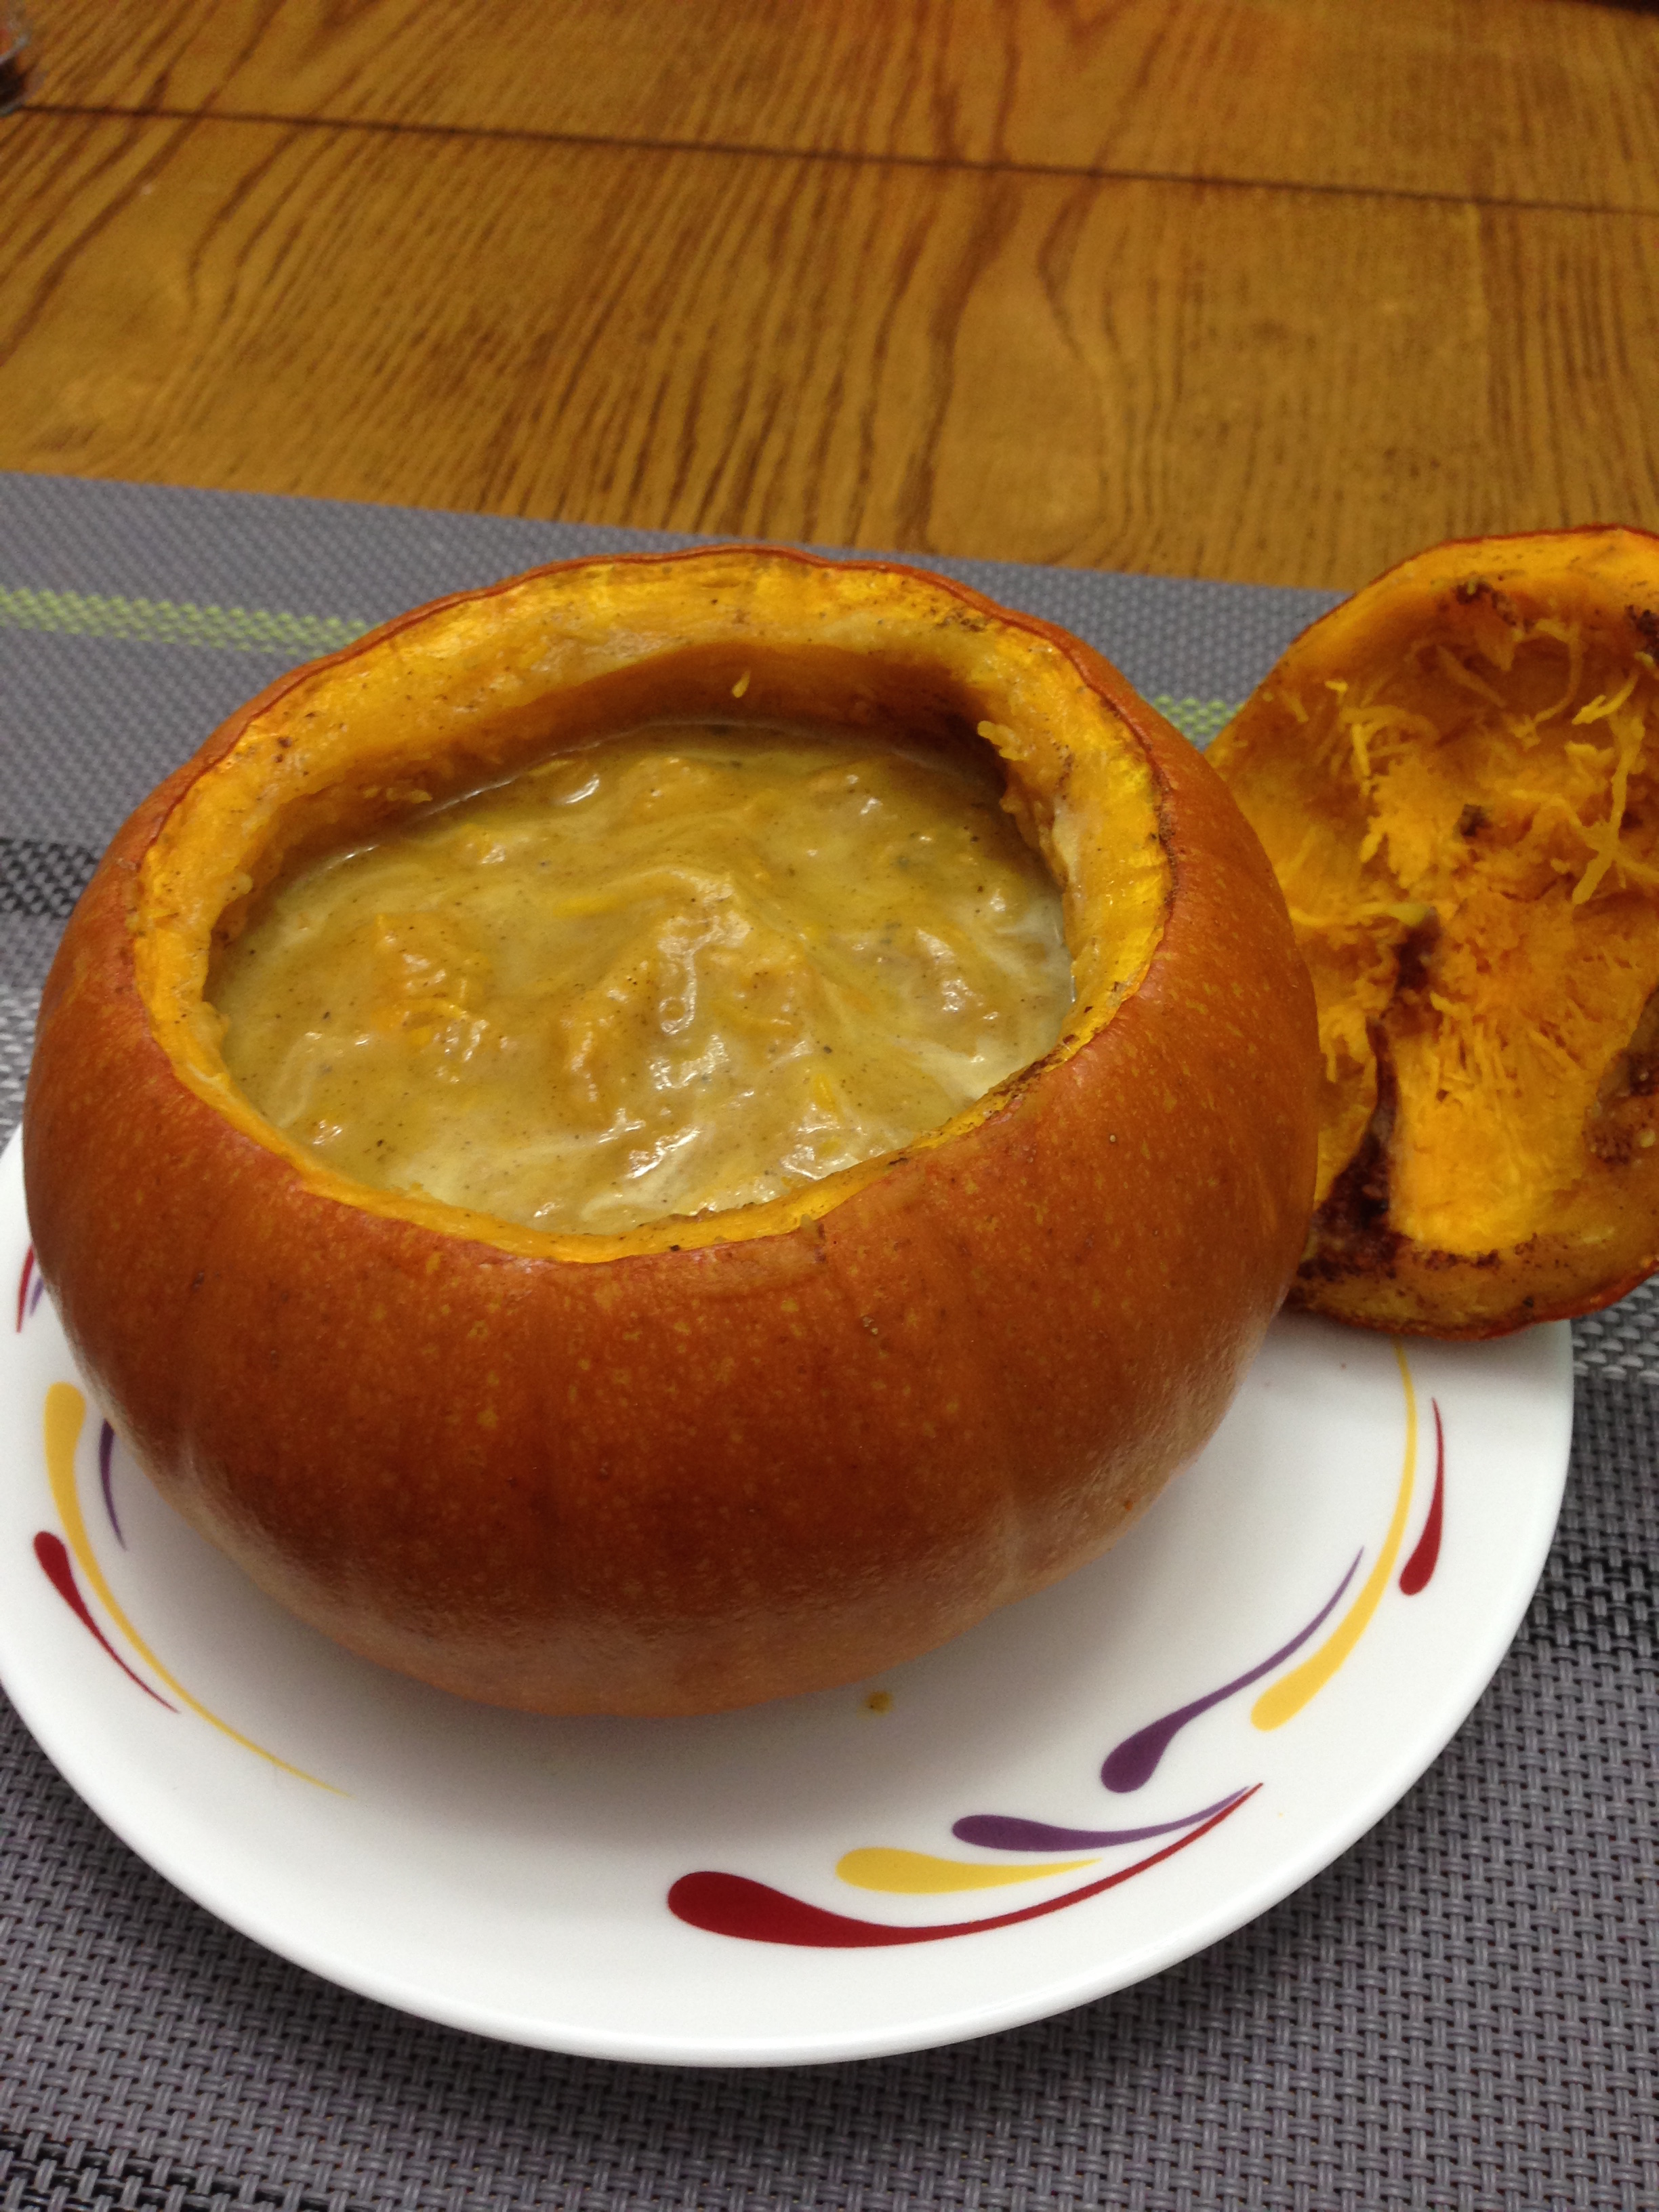 Pumpkin Soup in a pumpkin